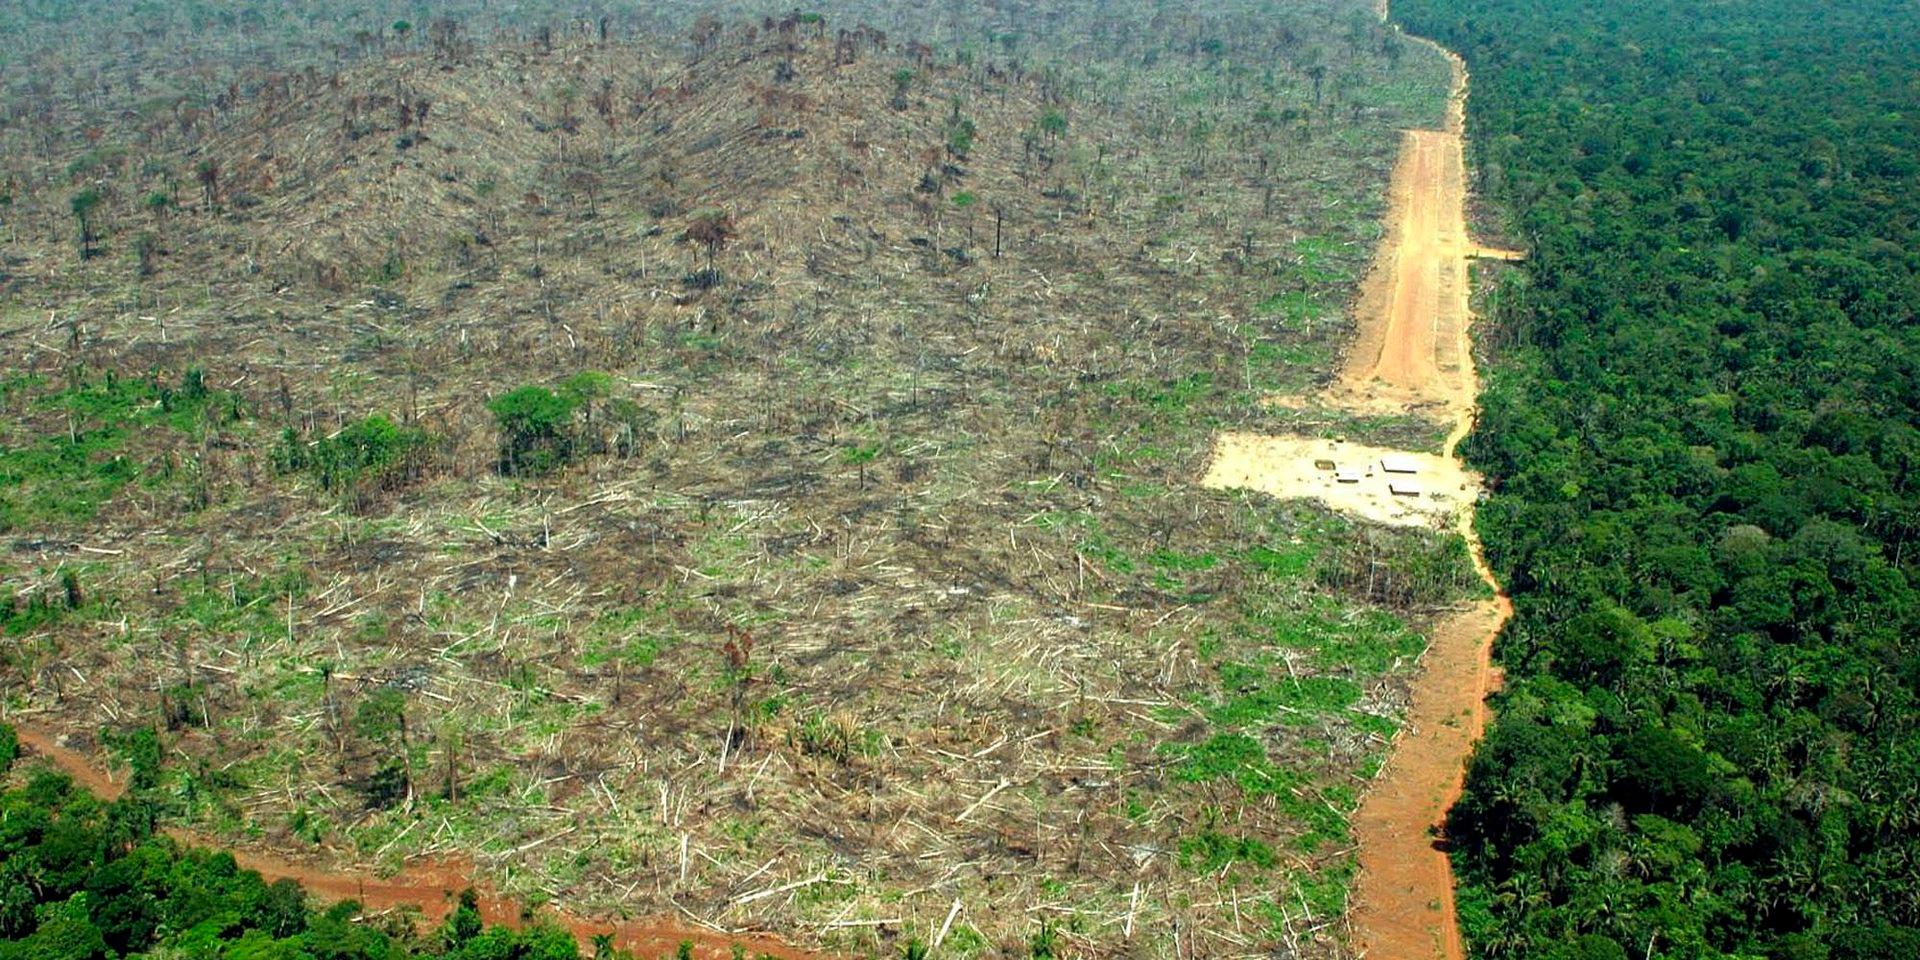 Regnskogen i Brasilien skövlas för att ge plats åt odlingsmark, mestadels för djurfoder. Något som får förödande konsekvenser för klimatet och ekosystemen.